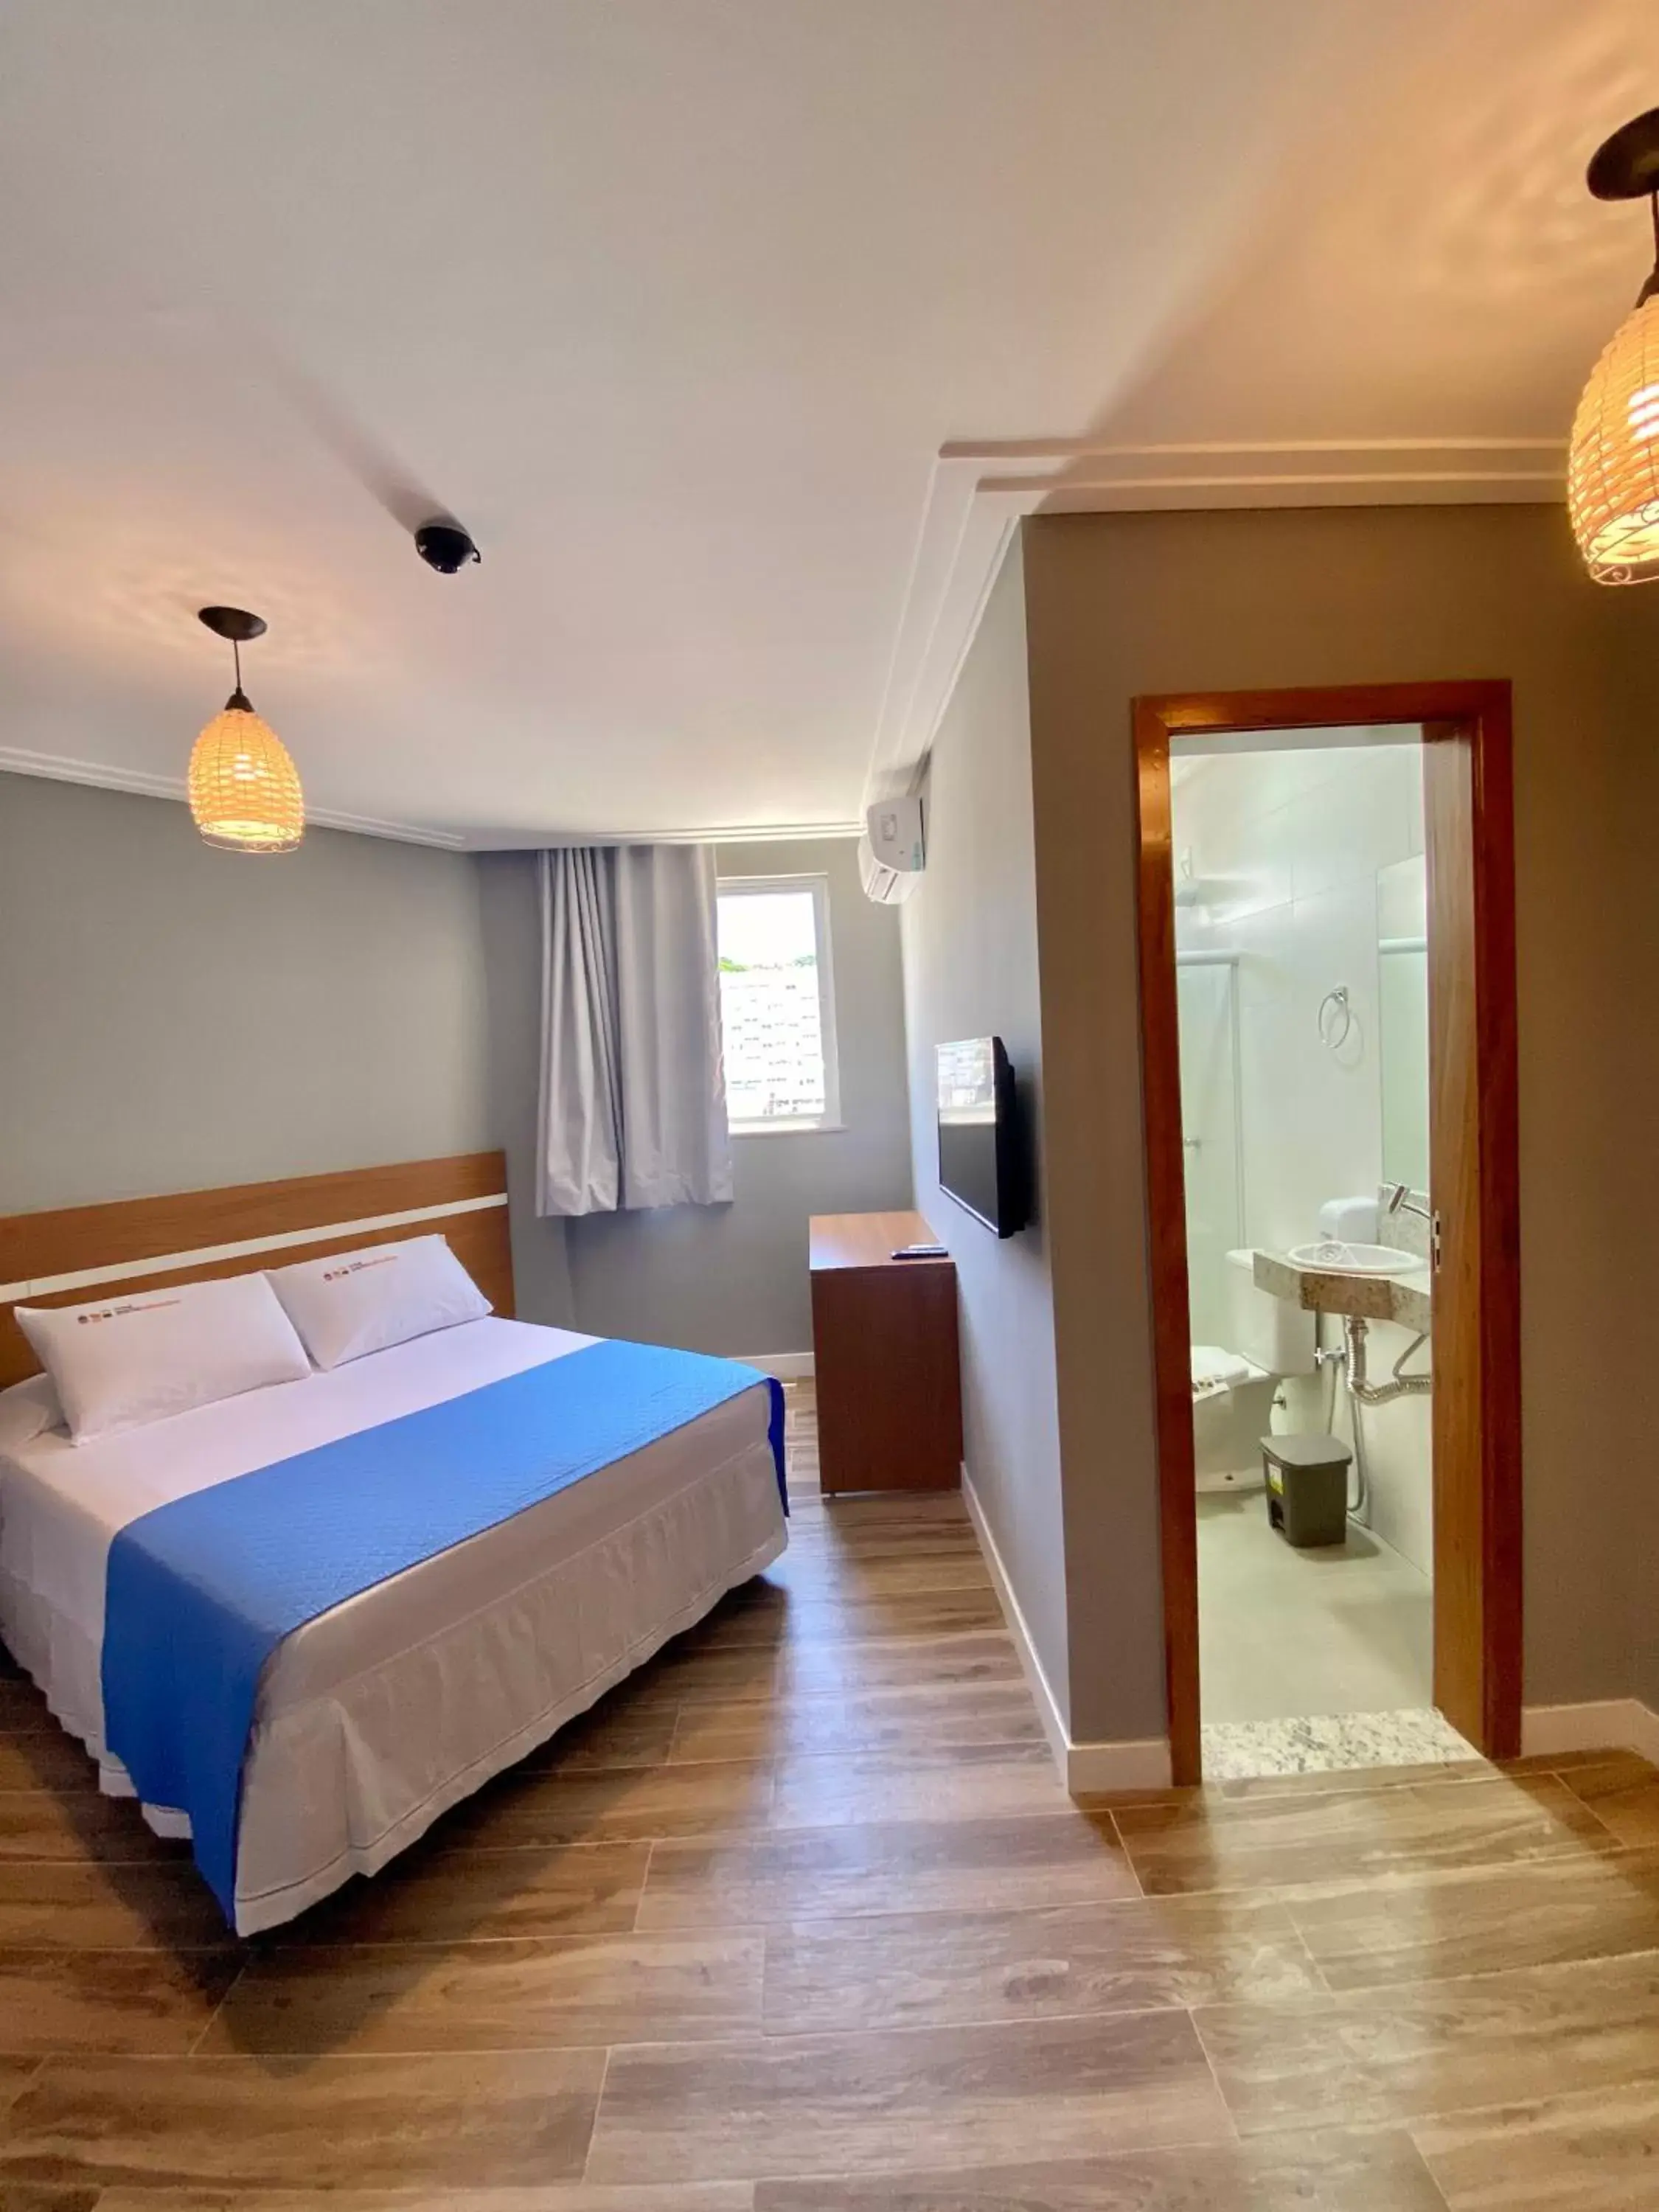 Bed in Hotel Porto Salvador